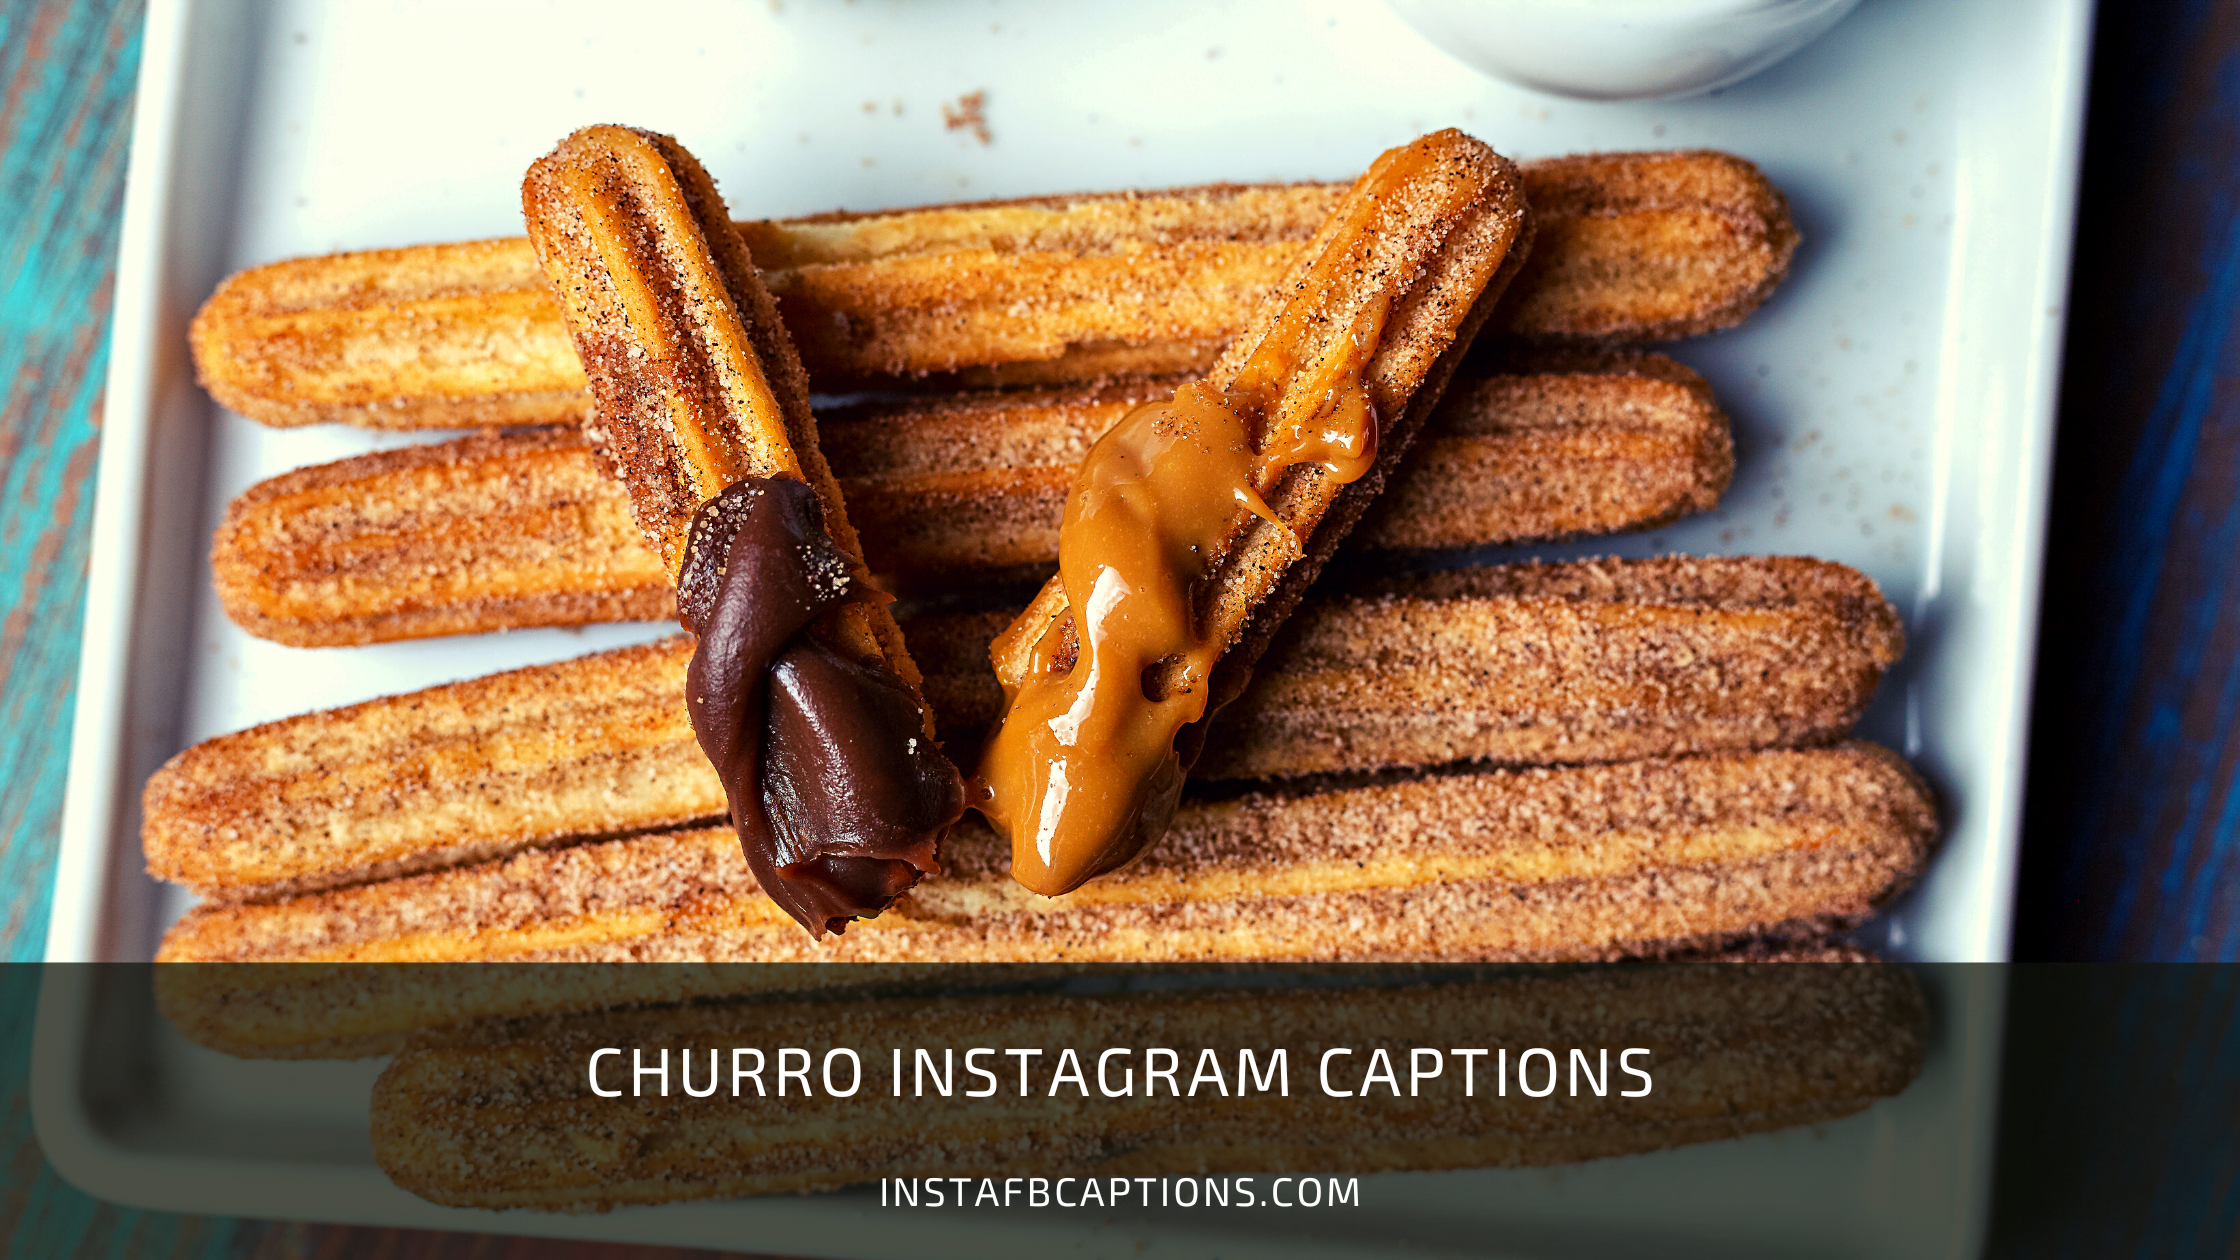 Churro Instagram Captions  - Churro Instagram Captions - [New] Churro Captions for Instagram in 2023